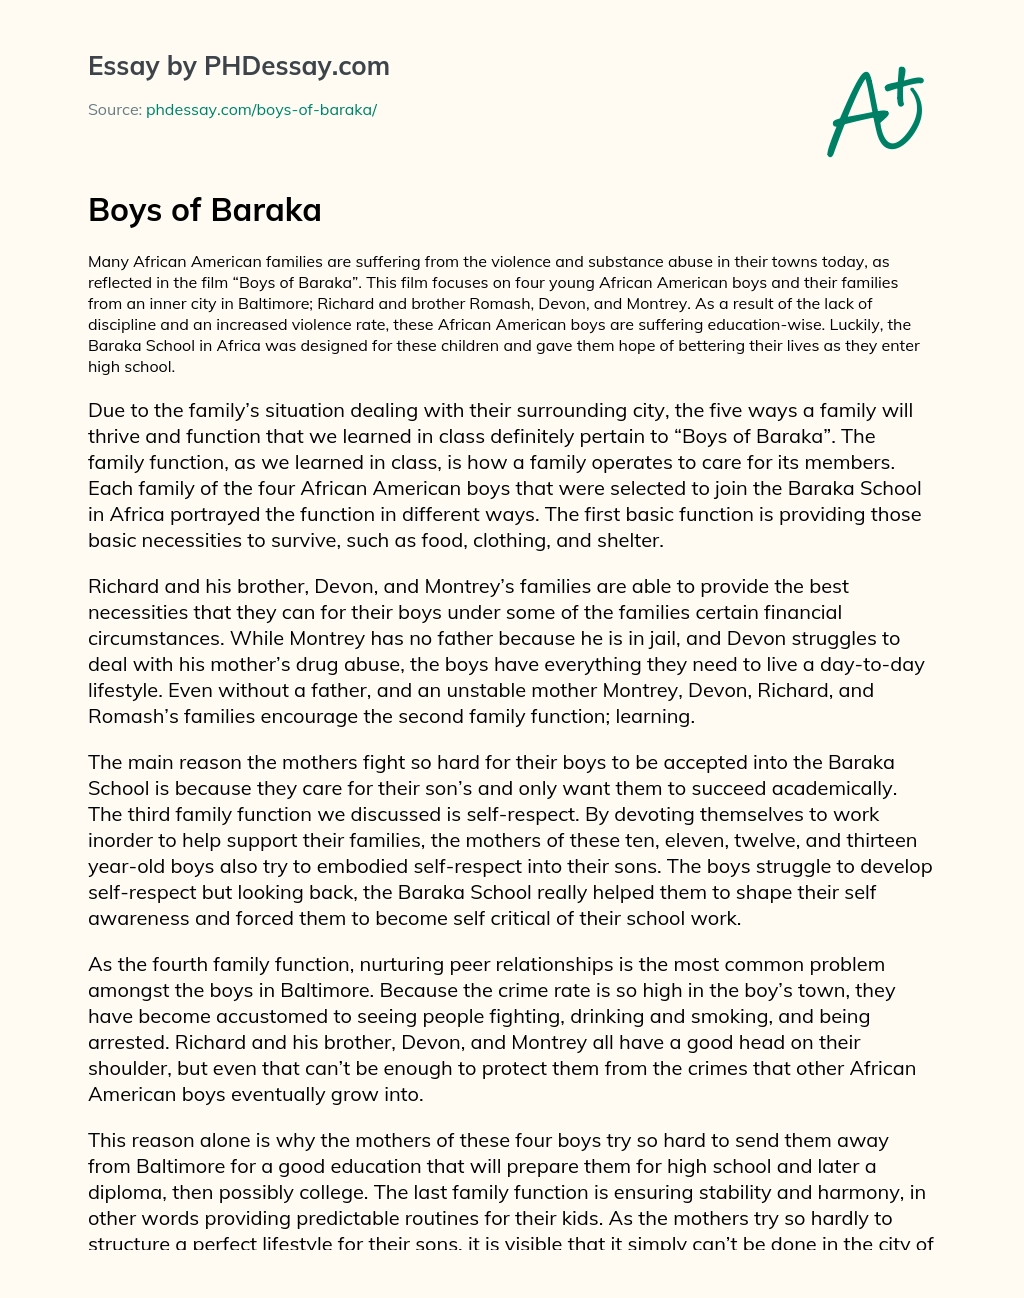 Boys of Baraka essay